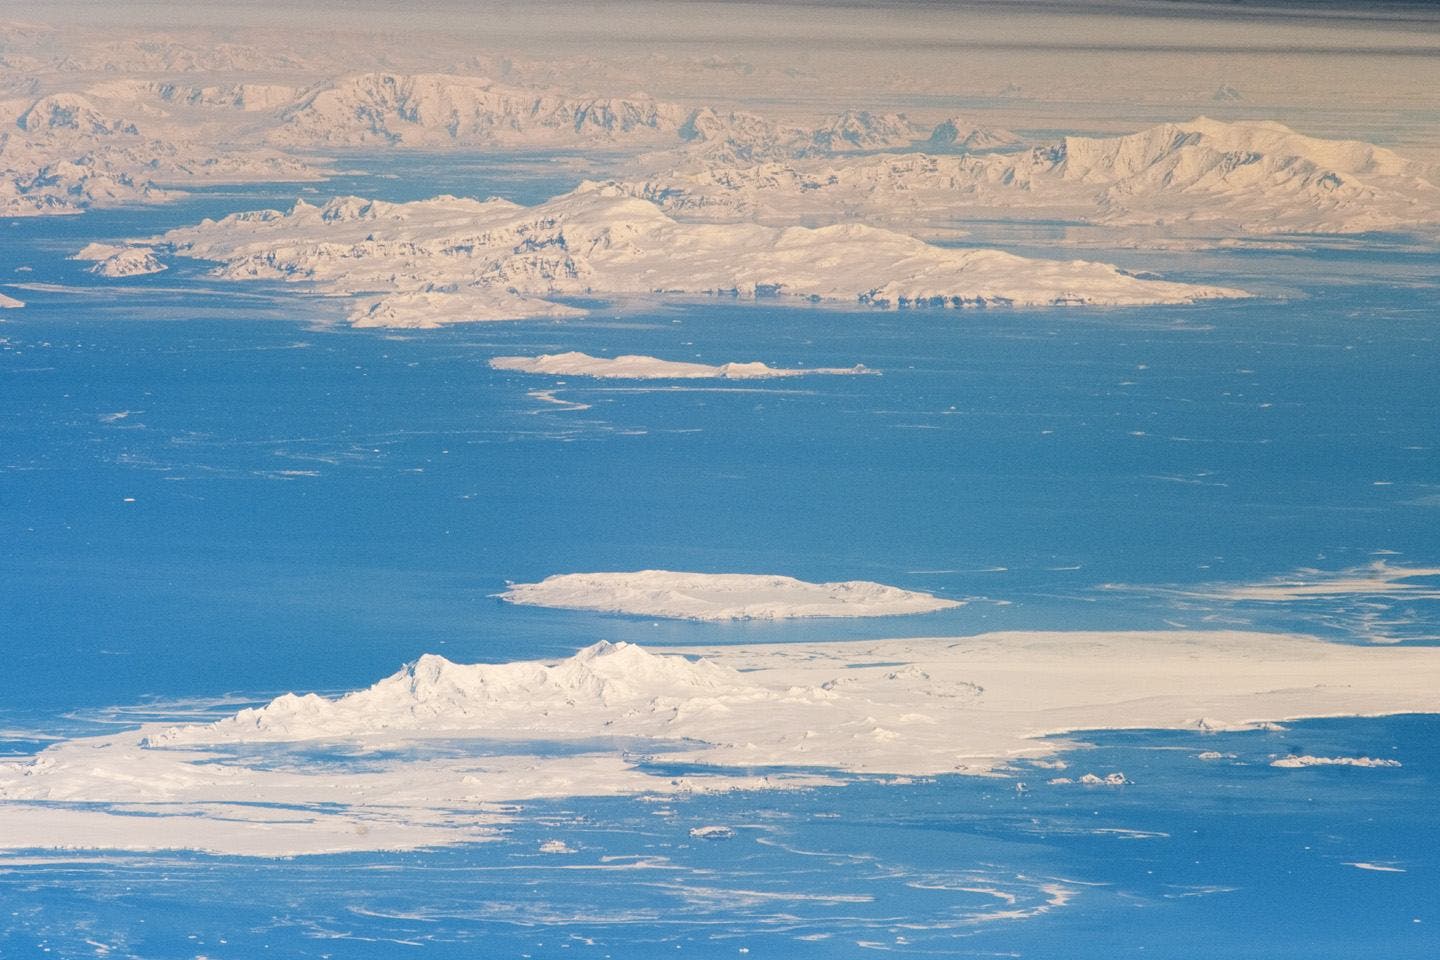 Die Antarktis aus dem All gesehen